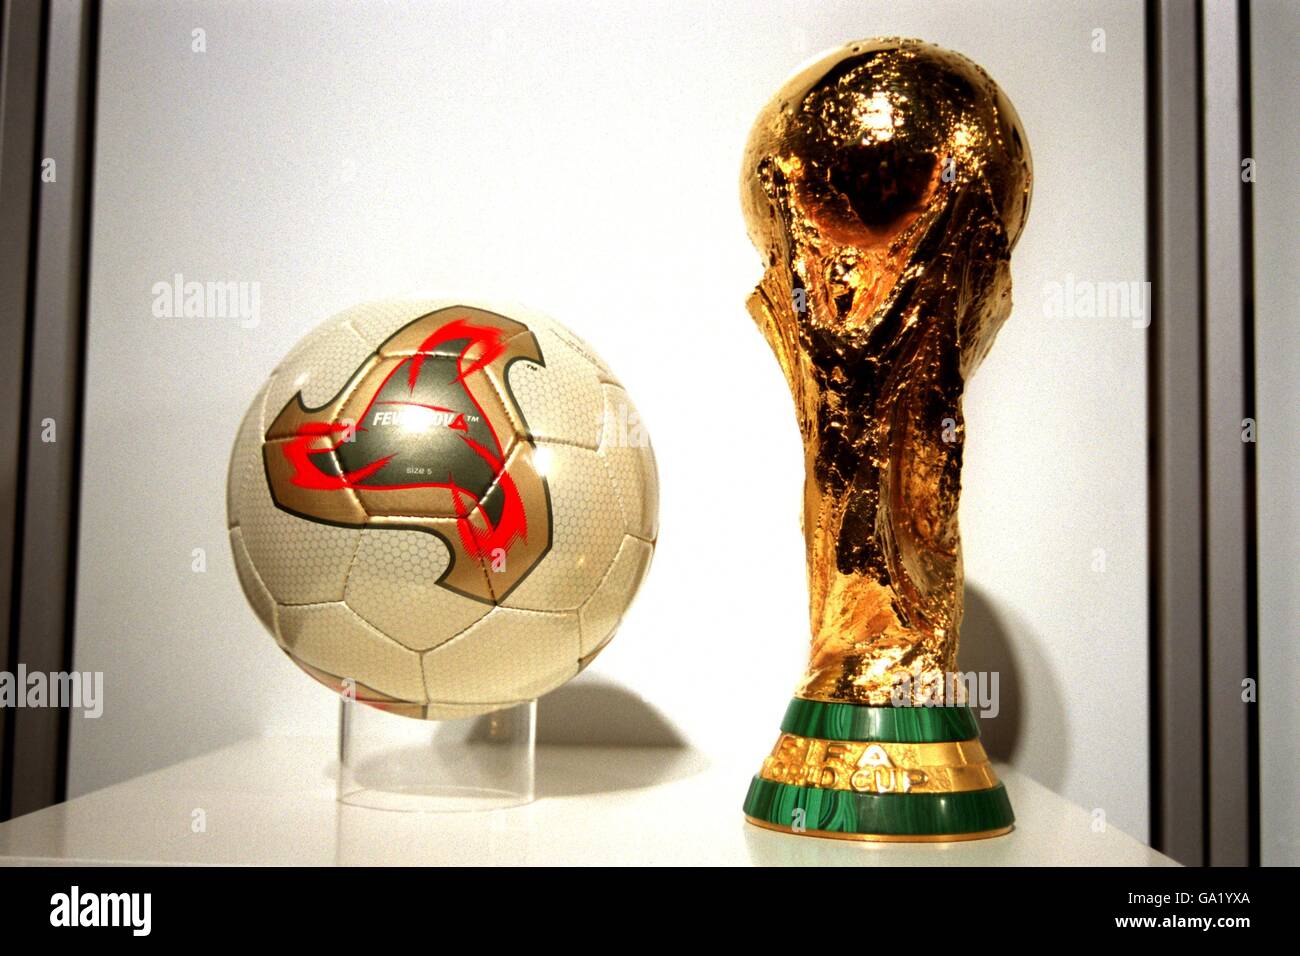 Le ballon Fevernova Adidas, le ballon officiel de la coupe du monde de la  FIFA Corée/Japon 2002 Photo Stock - Alamy